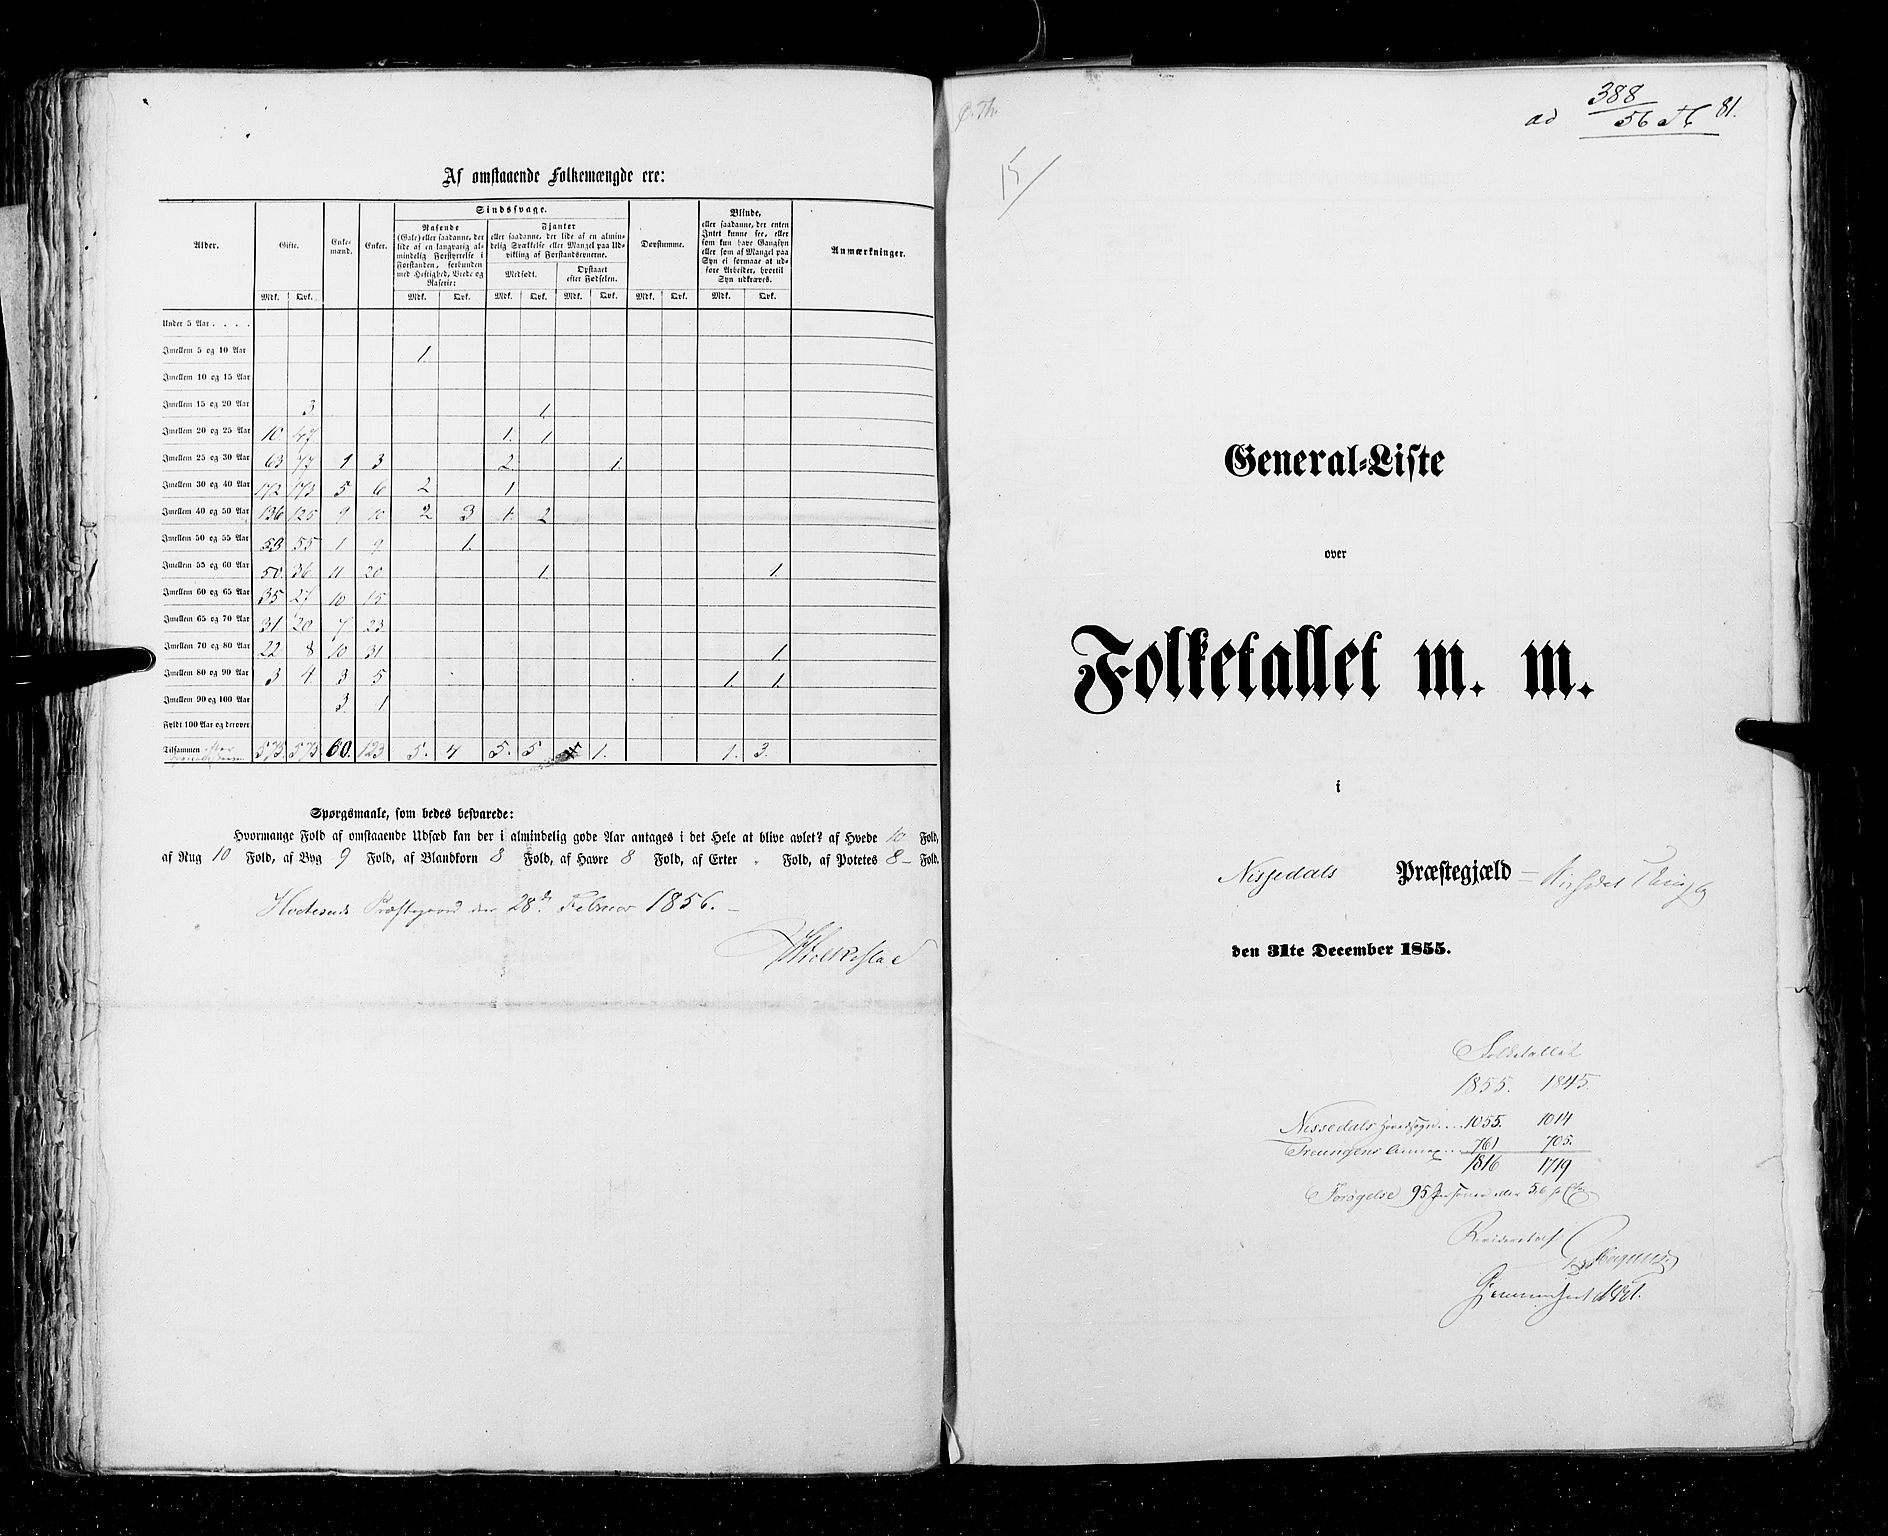 RA, Census 1855, vol. 3: Bratsberg amt, Nedenes amt og Lister og Mandal amt, 1855, p. 81